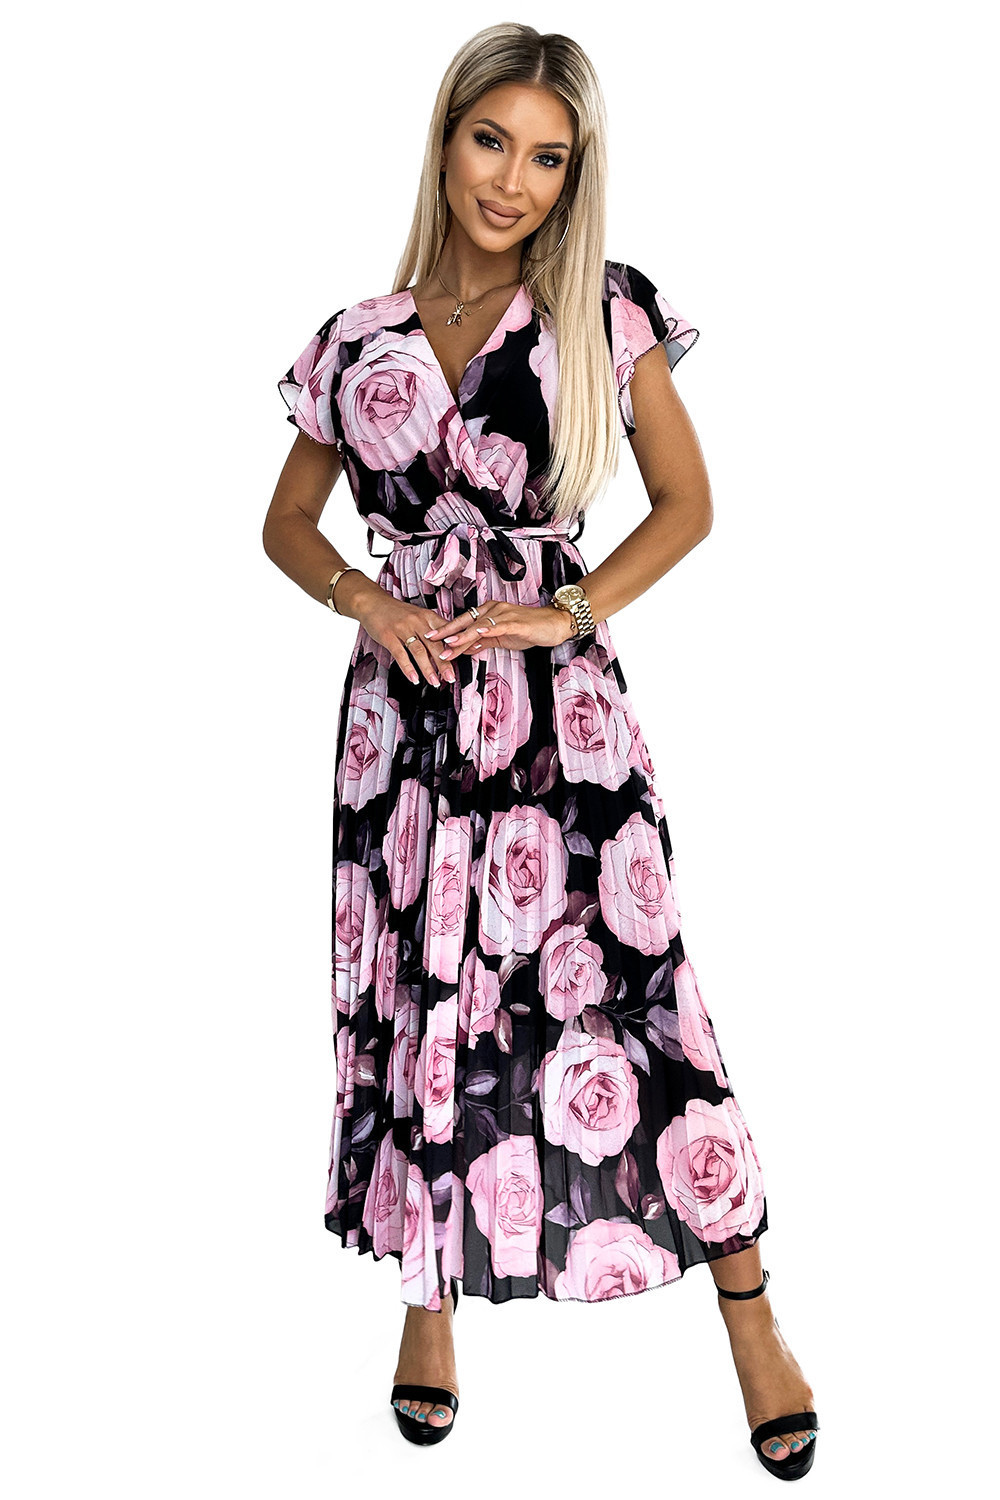 LISA - Plisované dámské midi šaty s výstřihem, volánky a se vzorem velkých růží na černém pozadí 434-3 UNI